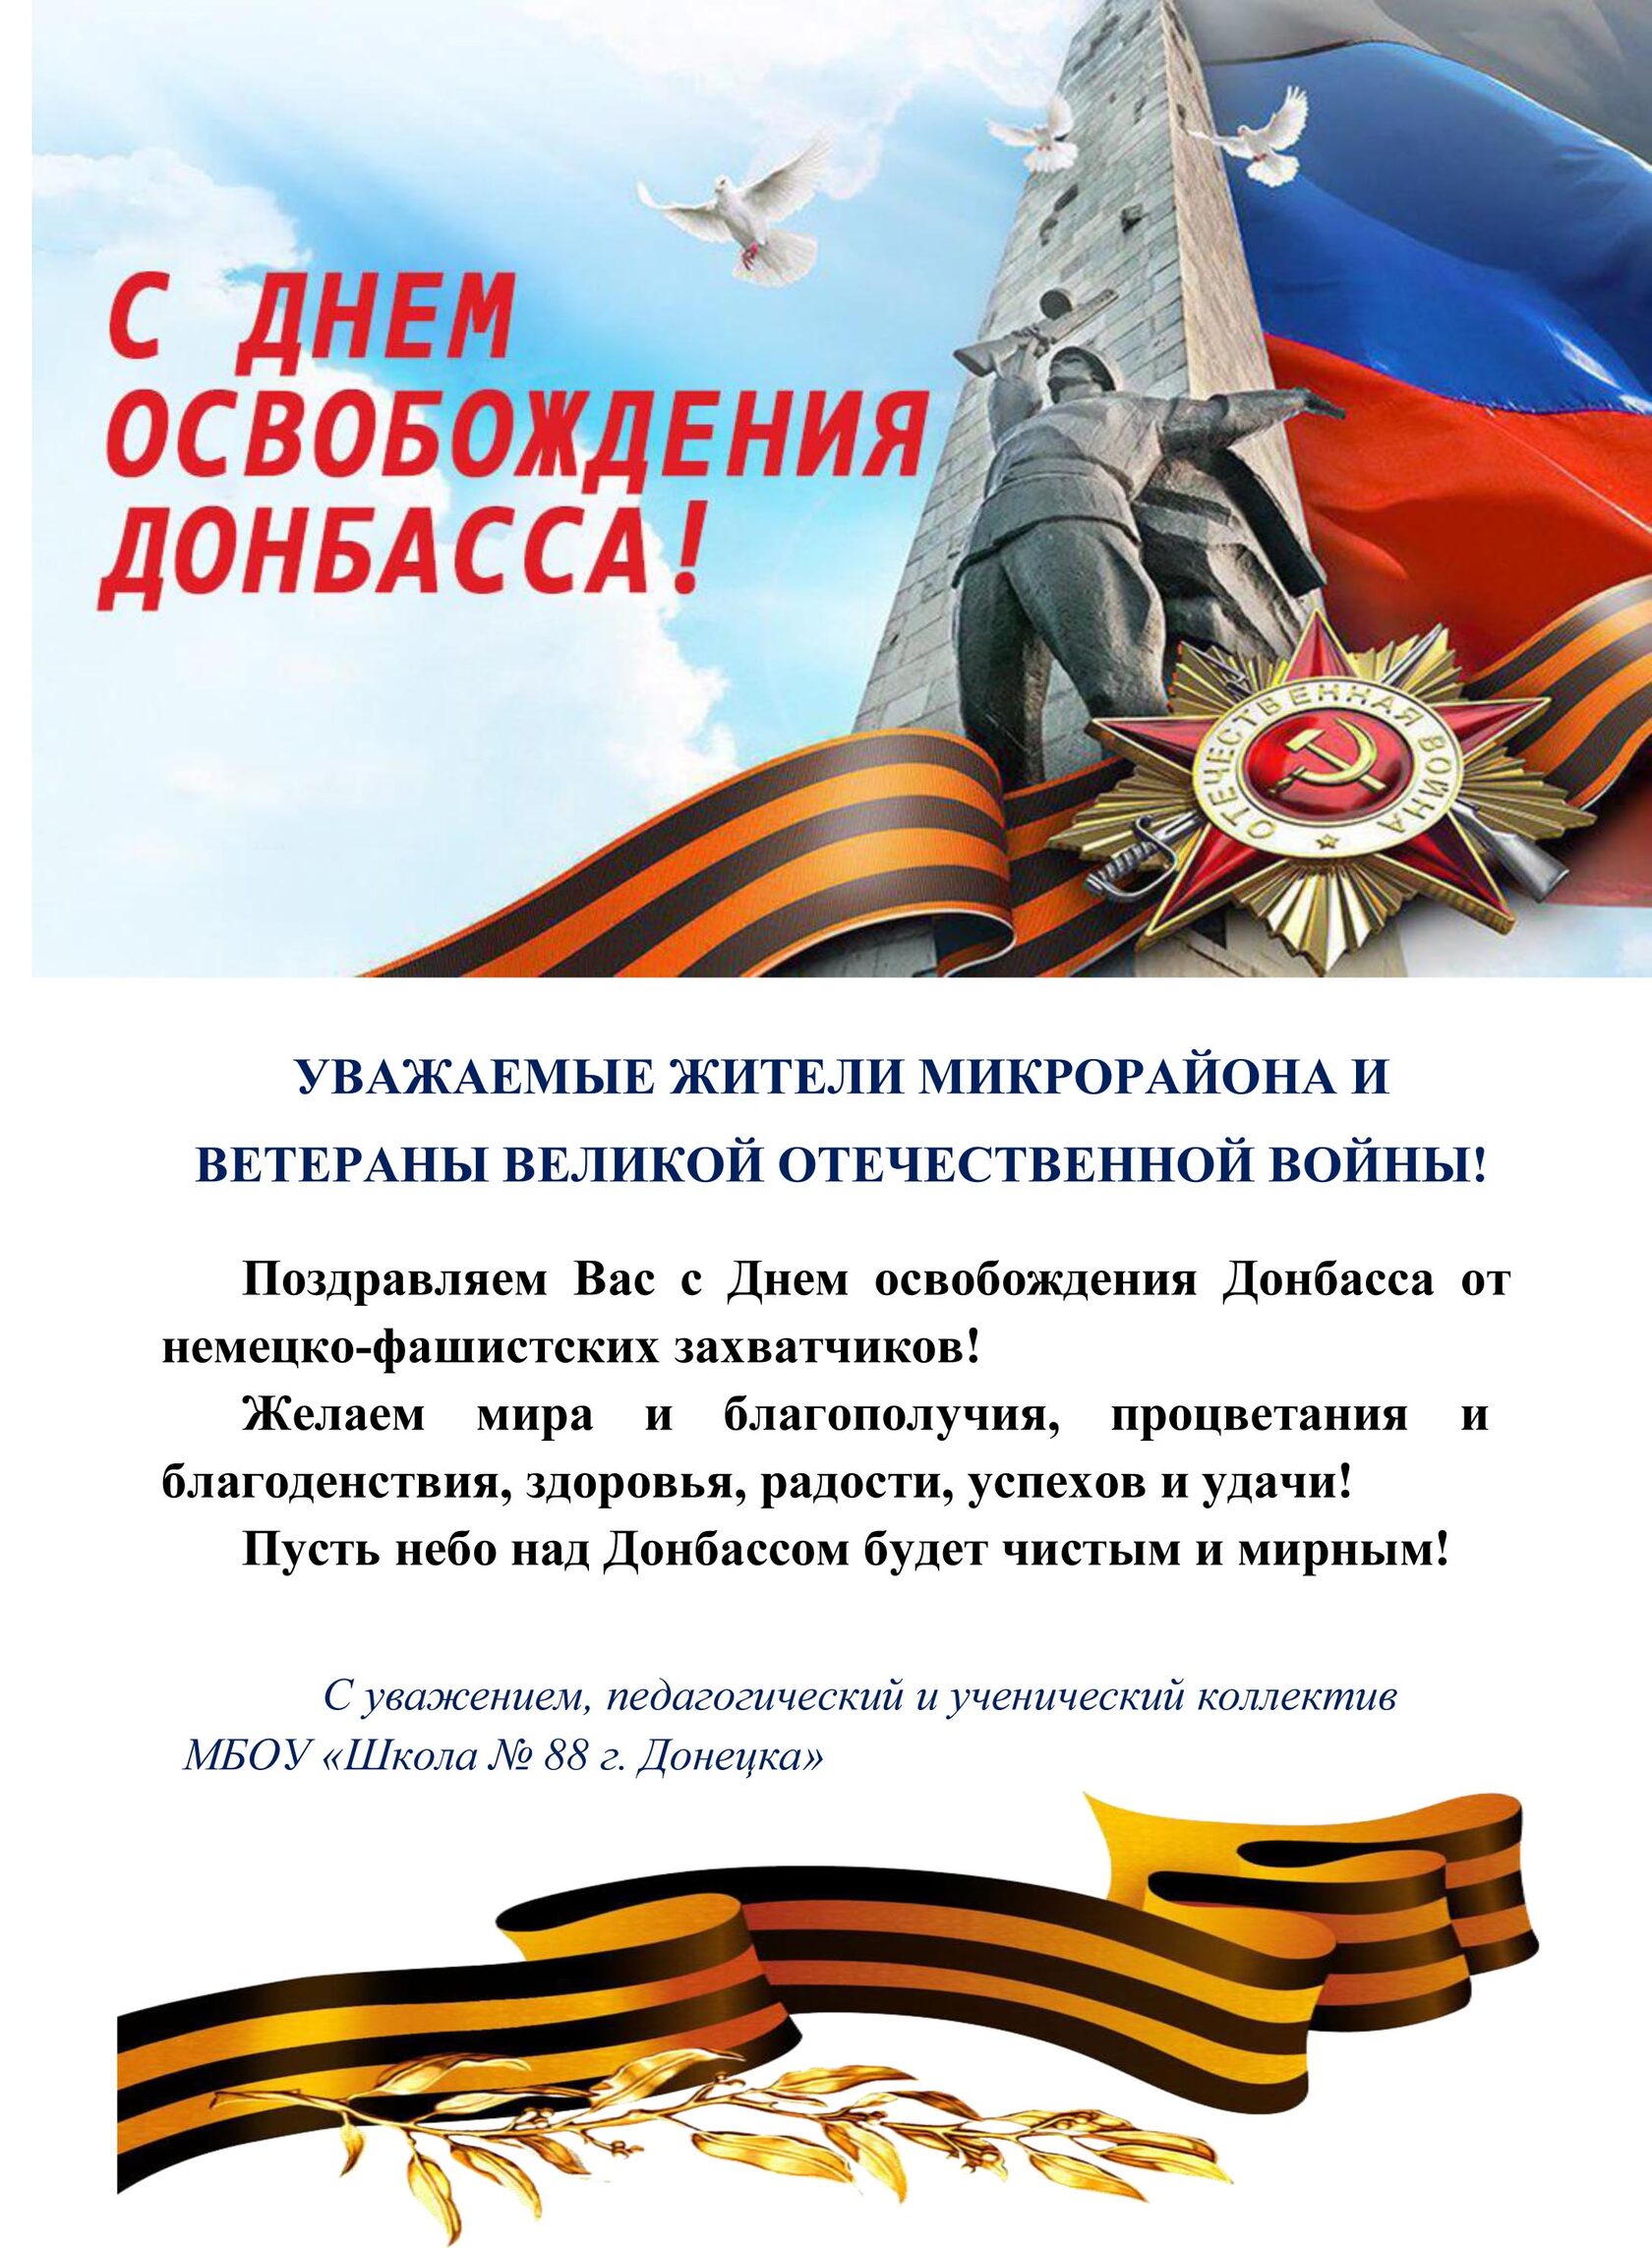 8 Сентября день освобождения Донбасса